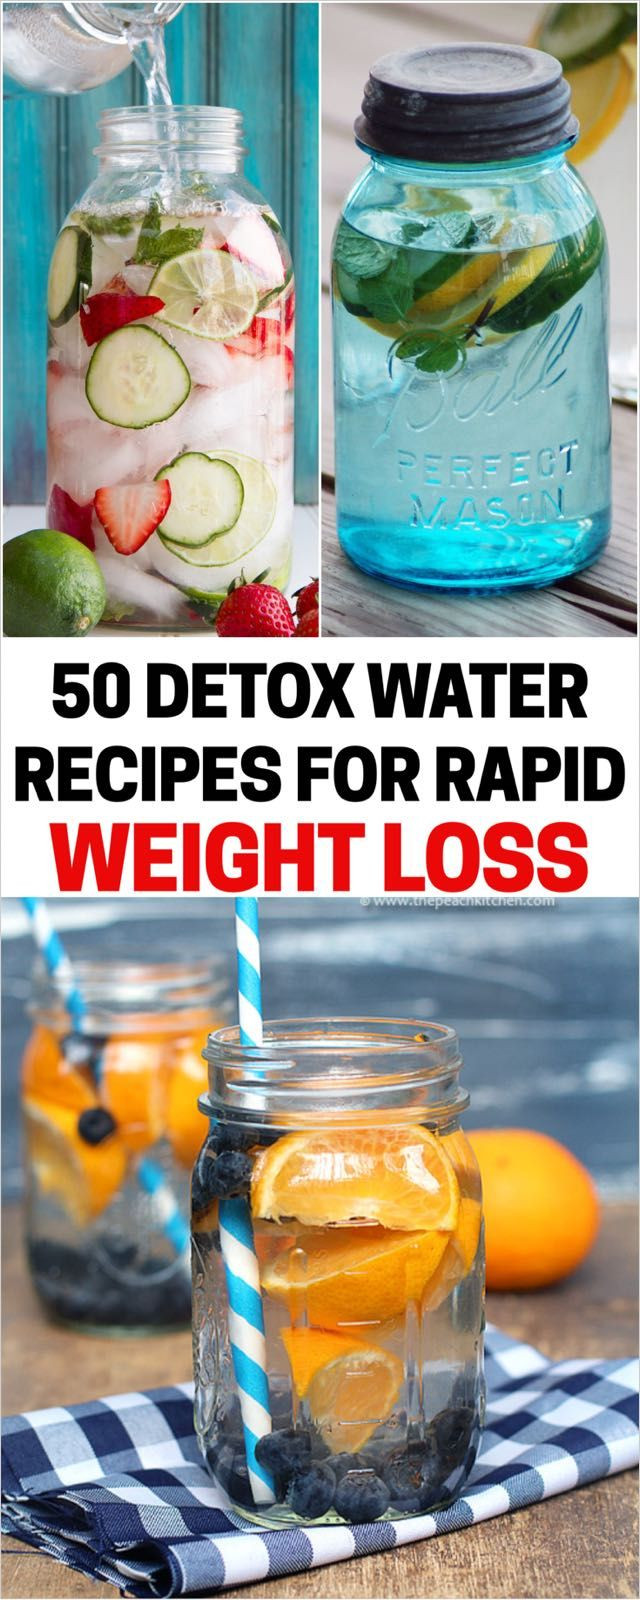 Detox Water For Weight Loss Recipes
 25 bästa idéerna om Detox på Pinterest